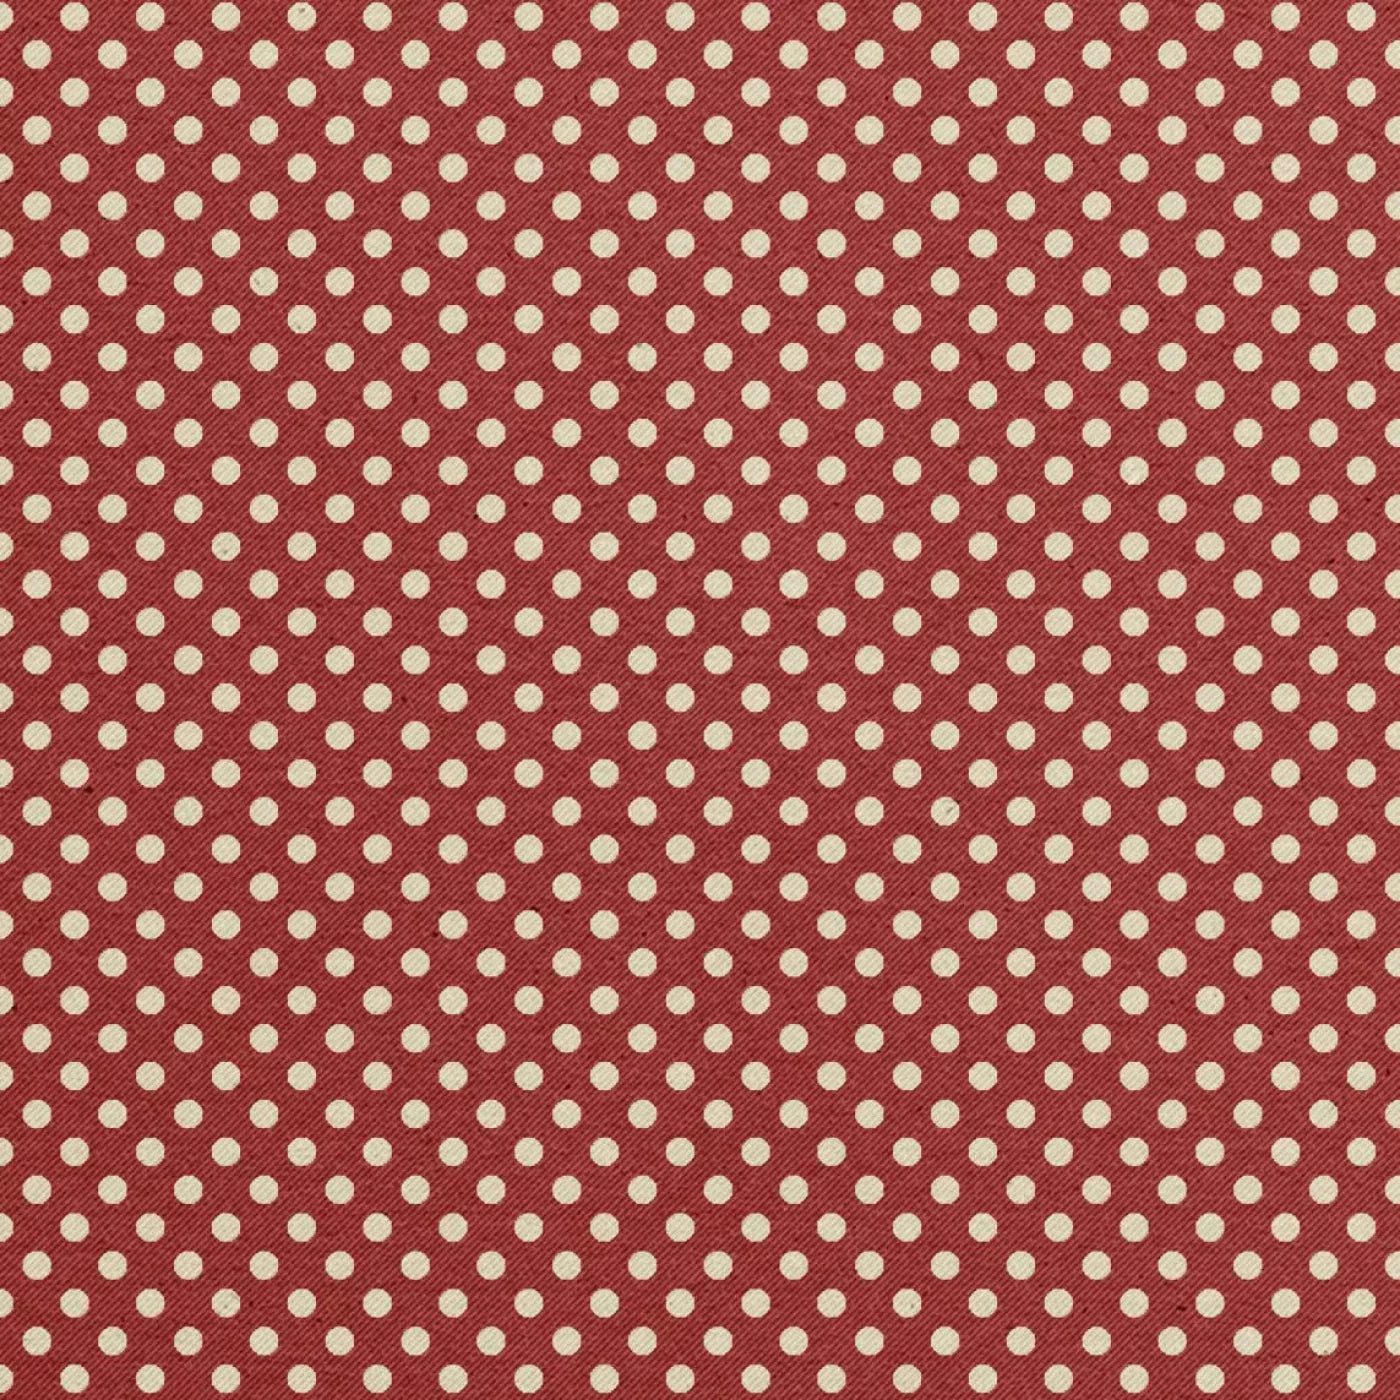 Cherry Berry 5X5 Rubbermat Floor ( 60 X Inch ) Backdrop